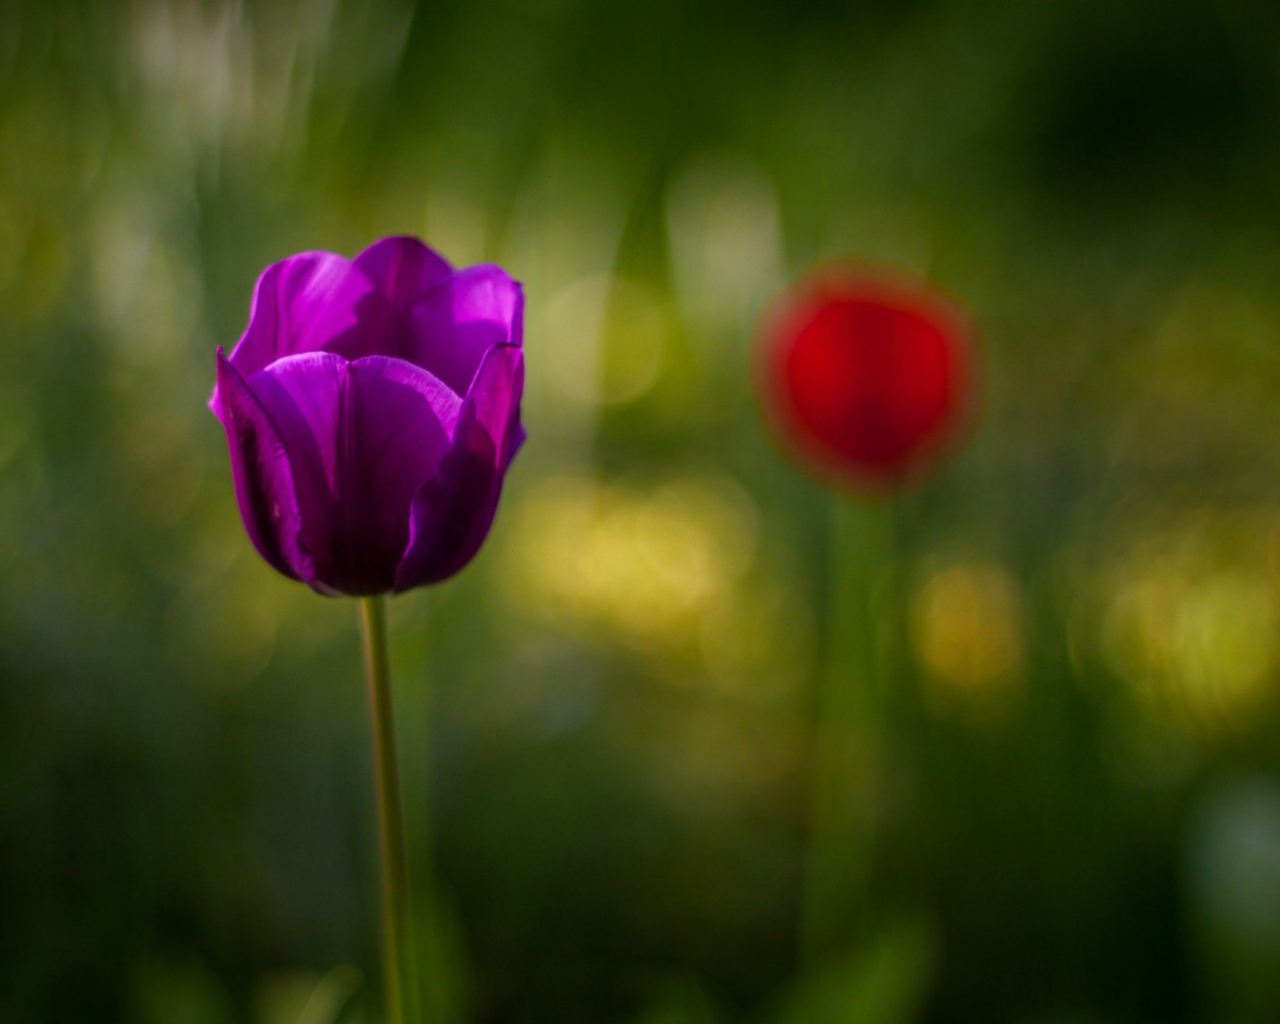 Фиолетовый тюльпан